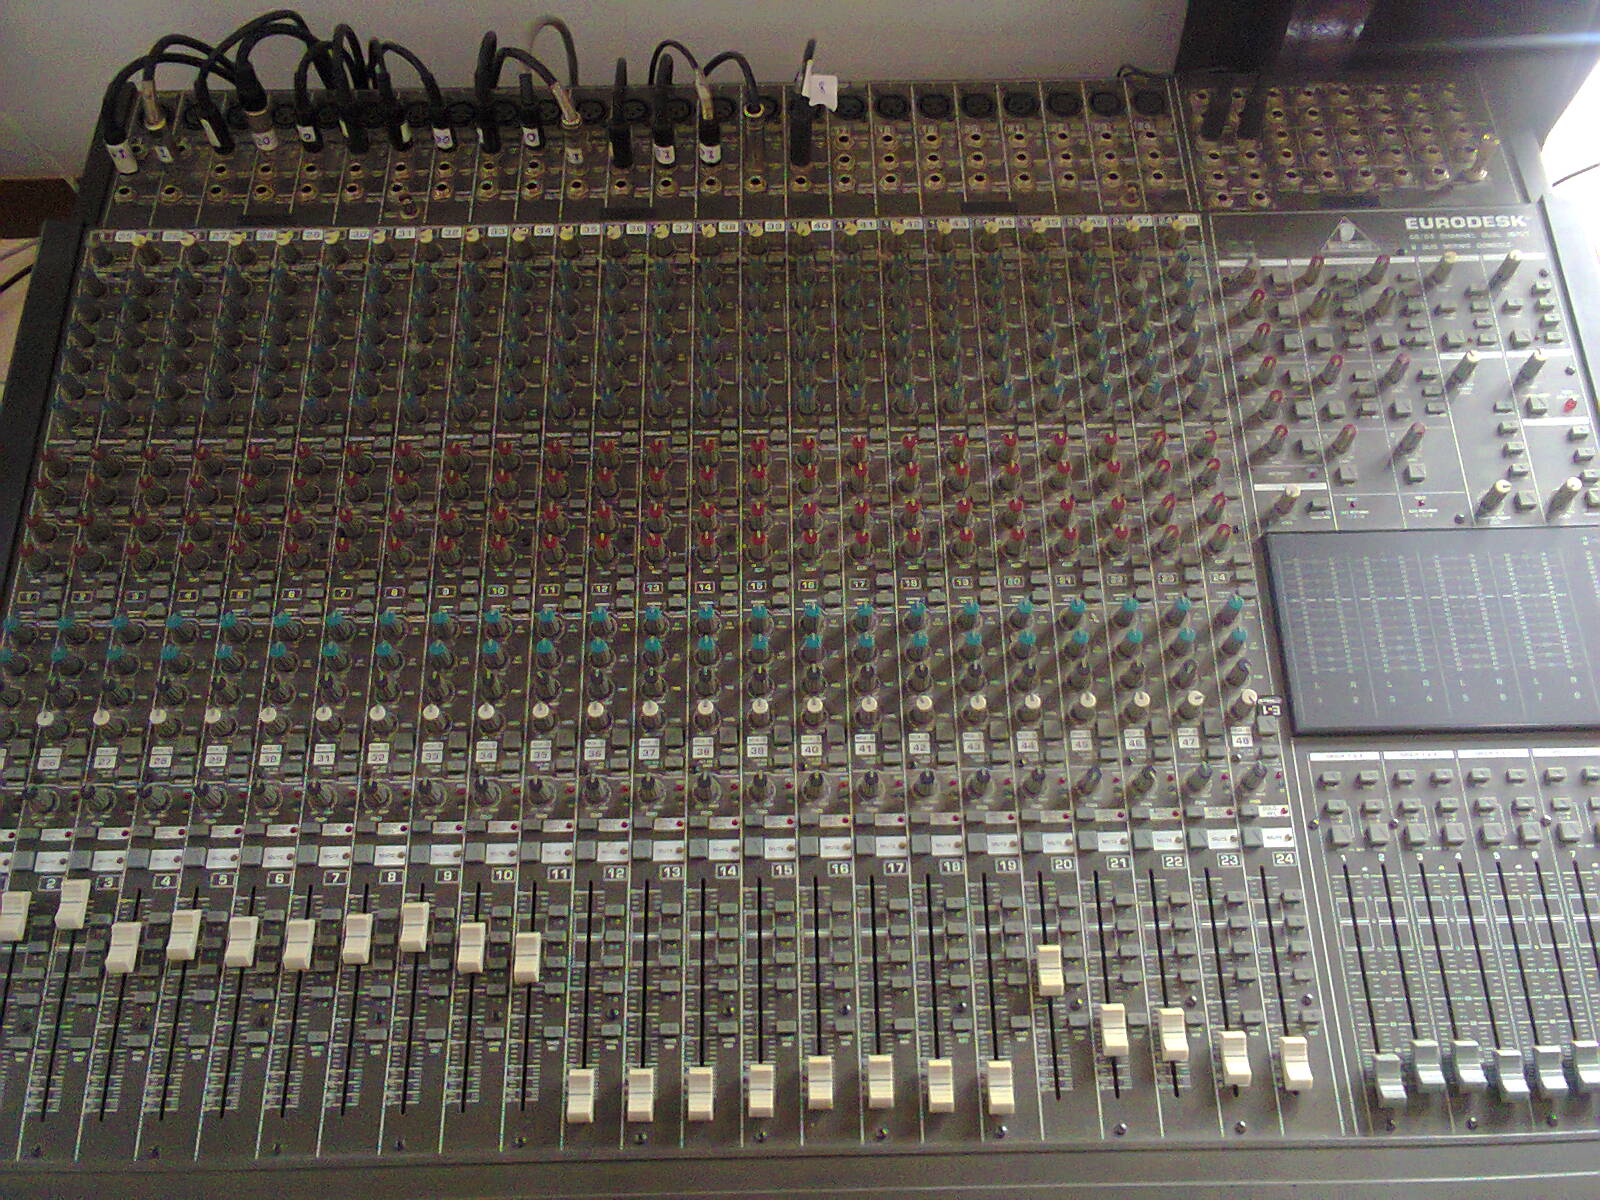 behringer mx8000 mixer